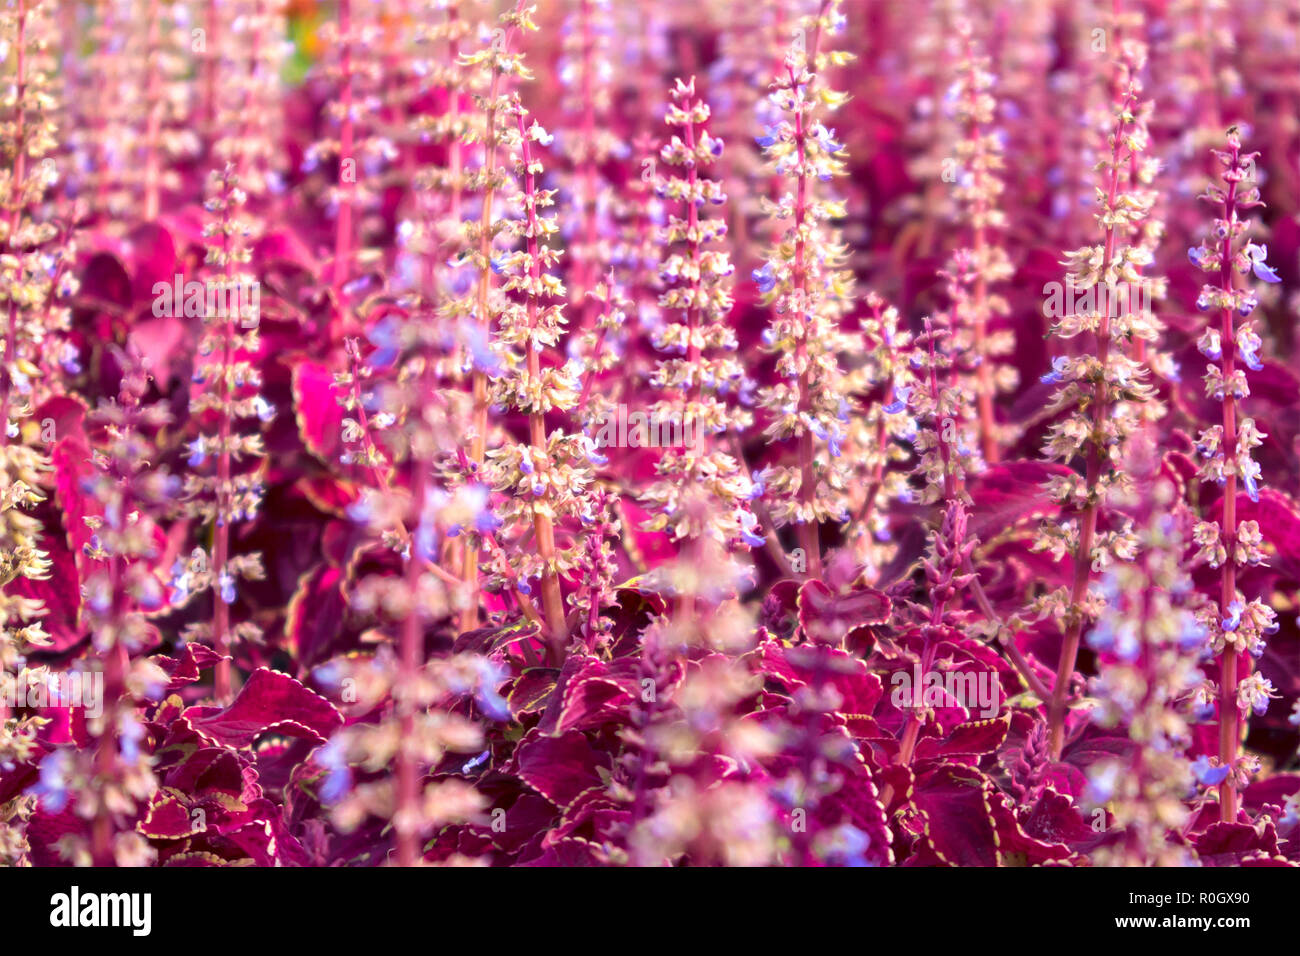 Lit fleur urbaine avec des fourrés denses de fleurs naturelles, coléus rouge fond violet Banque D'Images